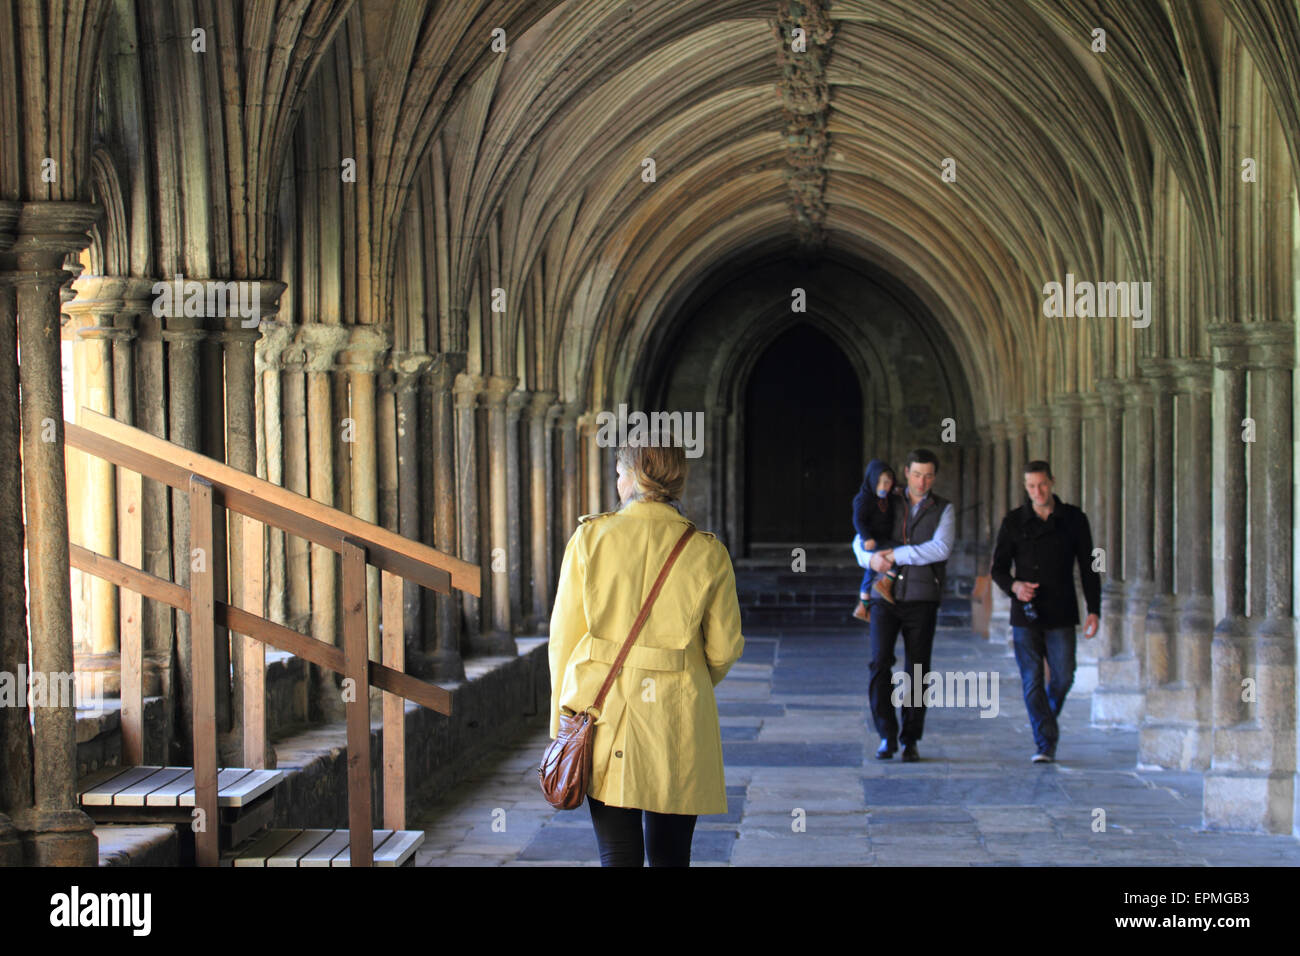 Hombre sujetando el bebé, personas visitando la catedral de Norwich, paseo en forma de arco, Norwich, Norfolk, UK Foto de stock